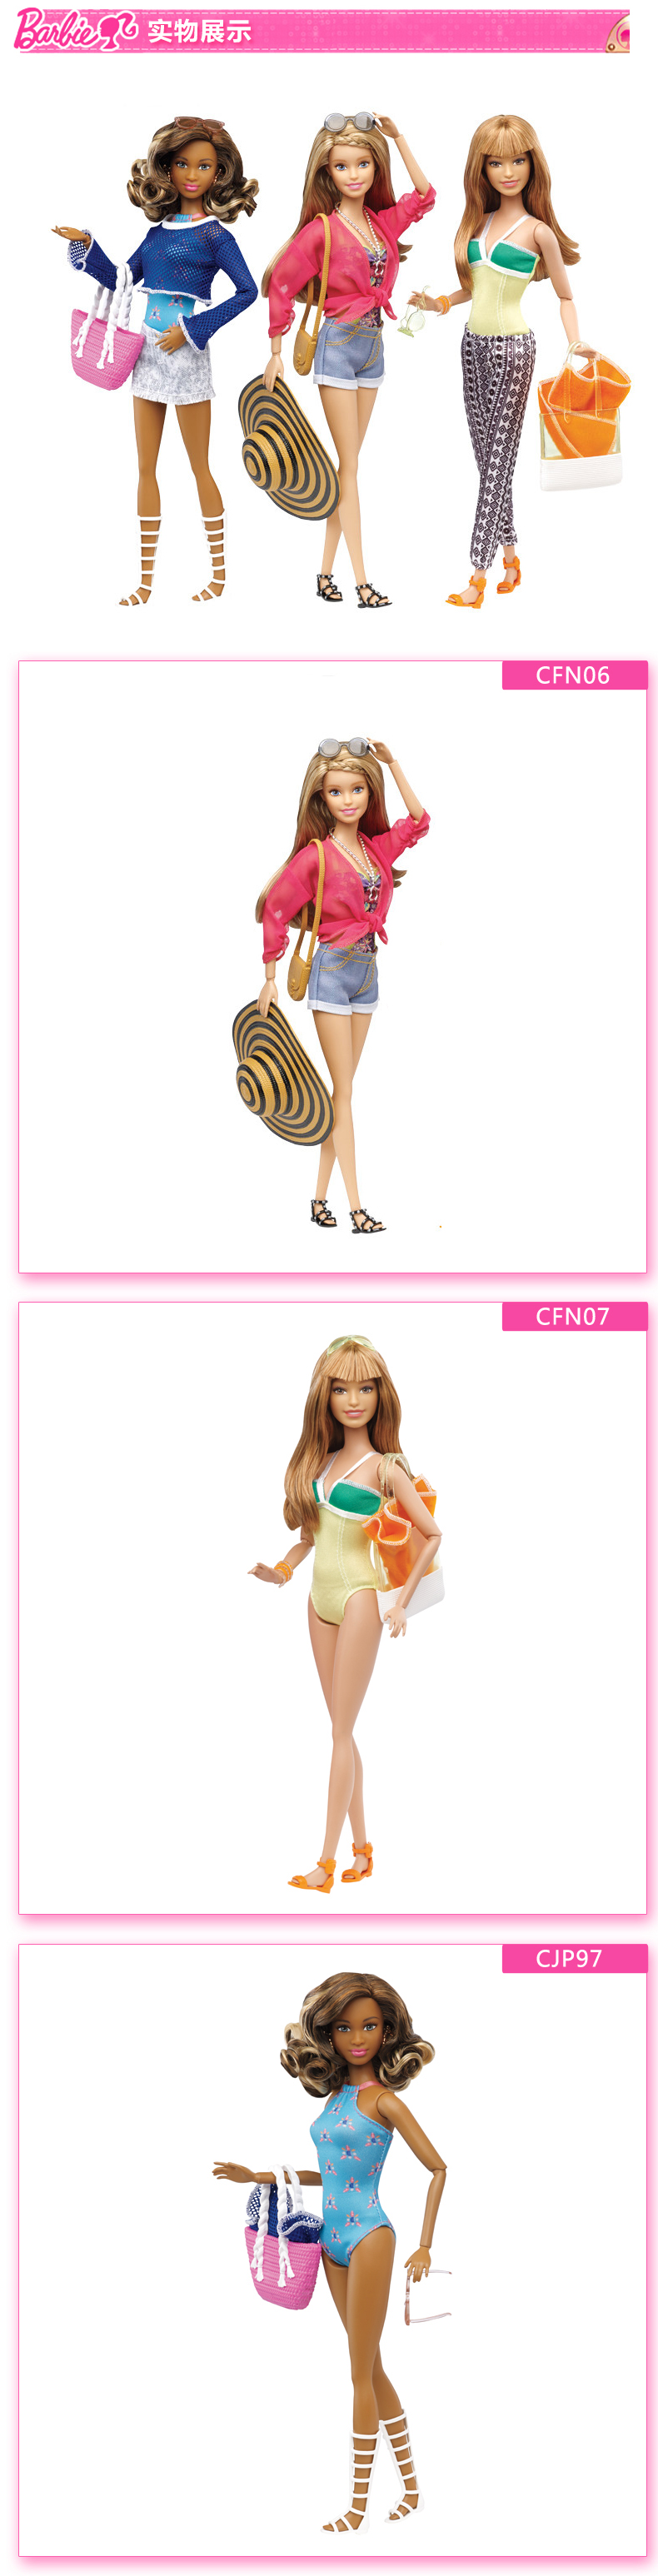 芭比CFN05/CFN07芭比度假套装多款娃娃女孩生日礼物玩具